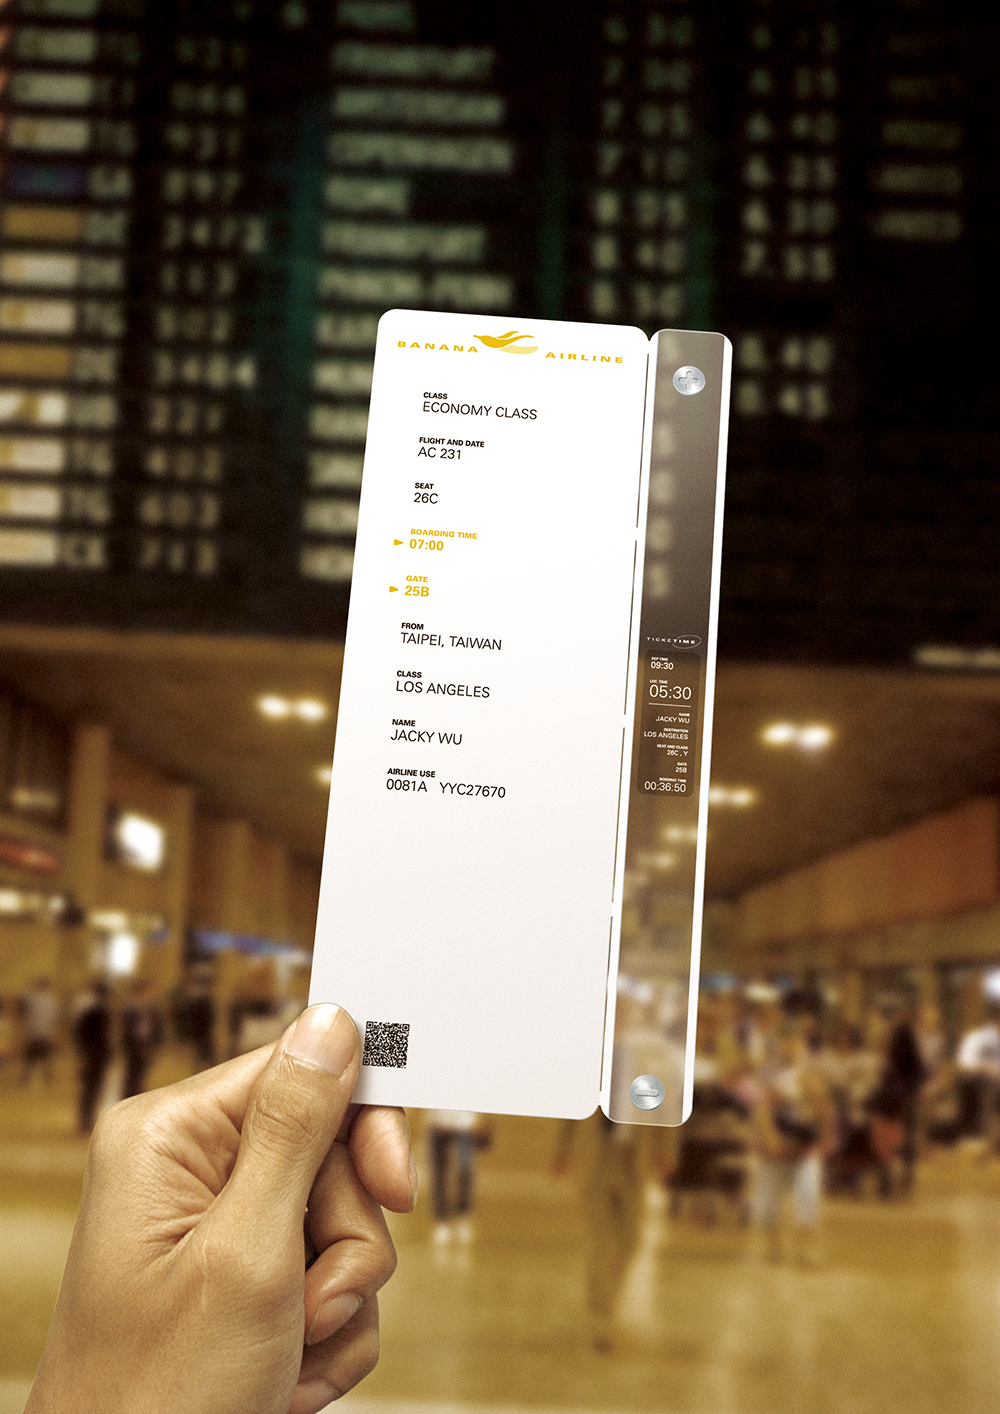 「電子登機證」，可當作電子紙手錶，顯示旅行期間的資訊及時間。